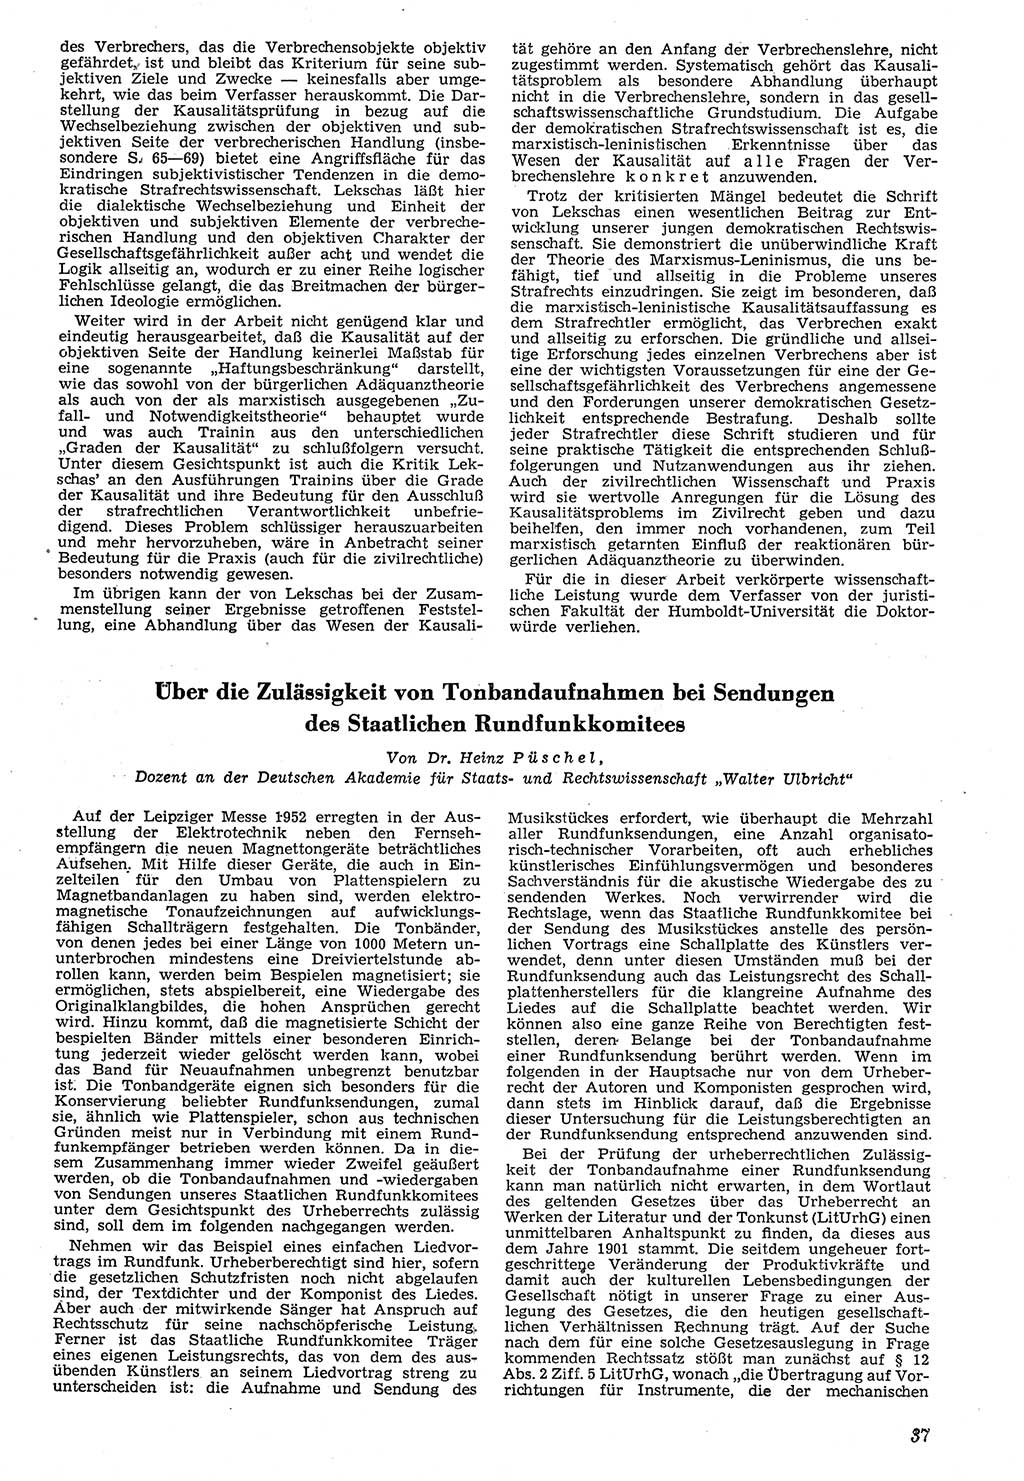 Neue Justiz (NJ), Zeitschrift für Recht und Rechtswissenschaft [Deutsche Demokratische Republik (DDR)], 7. Jahrgang 1953, Seite 37 (NJ DDR 1953, S. 37)